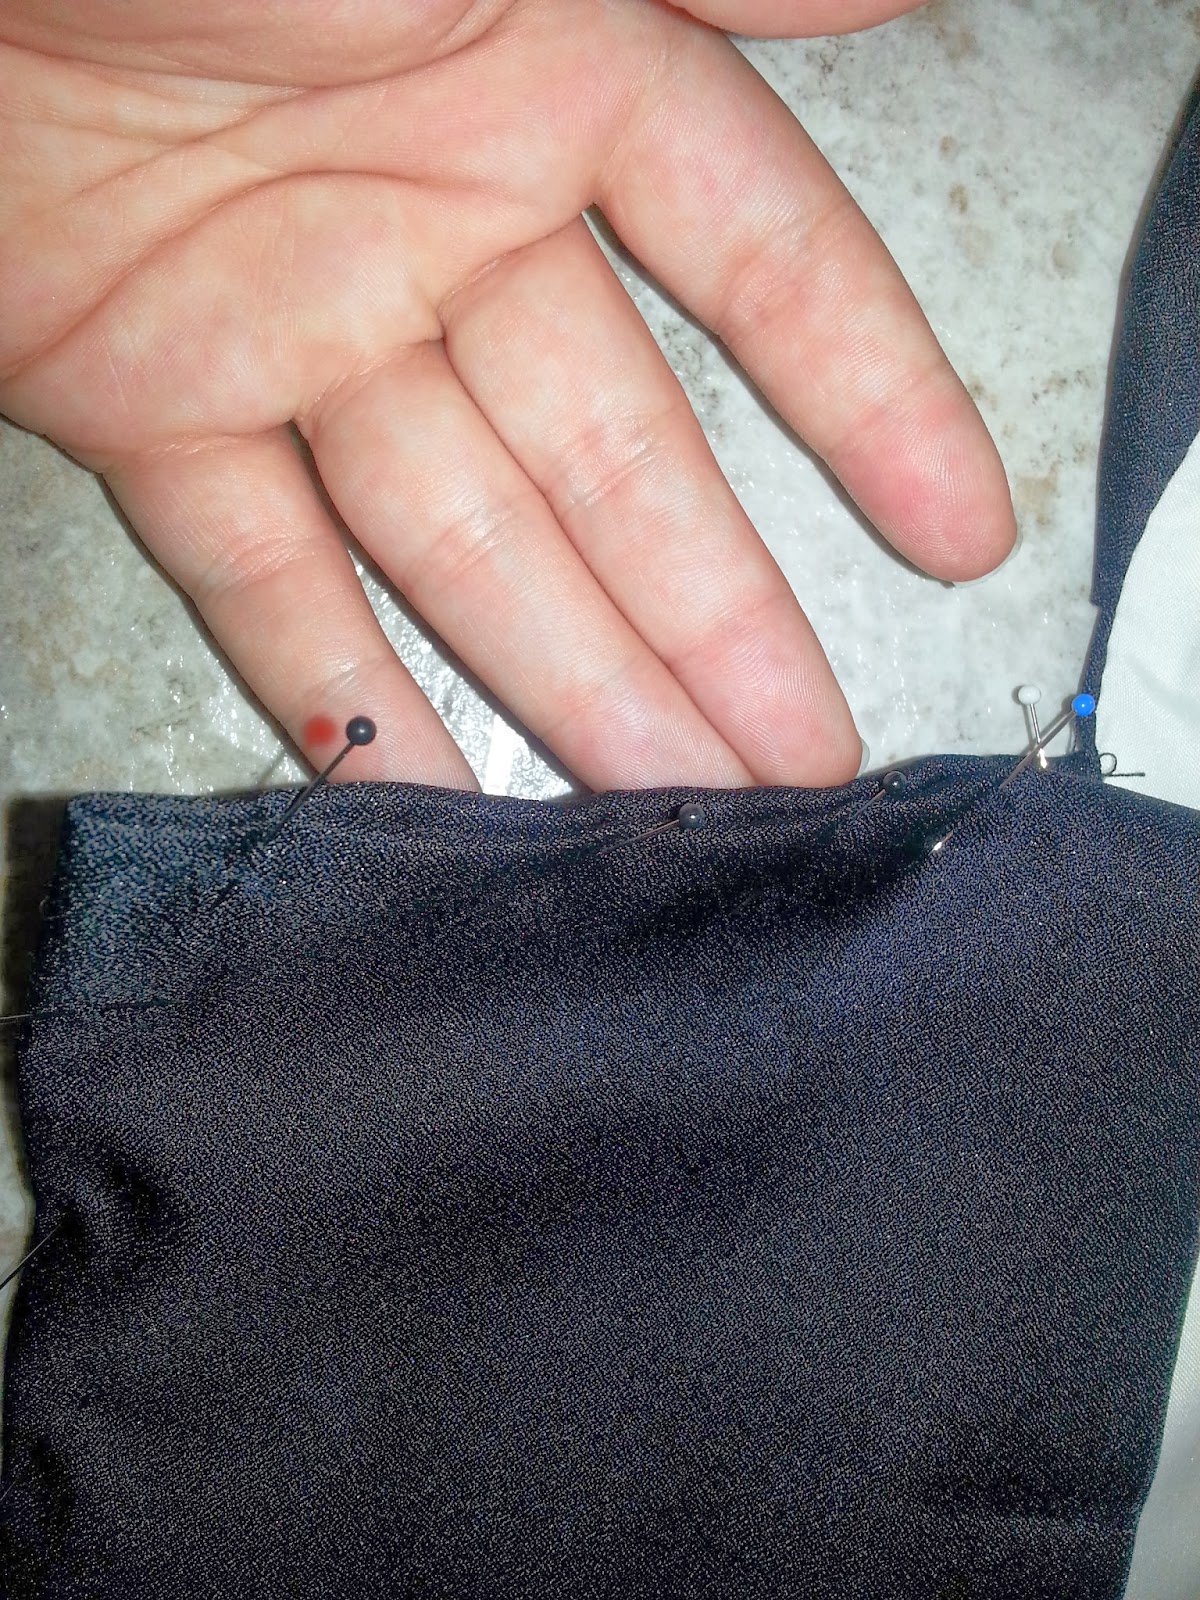 KIMONO LIFE: Sewing a Hifu Vest